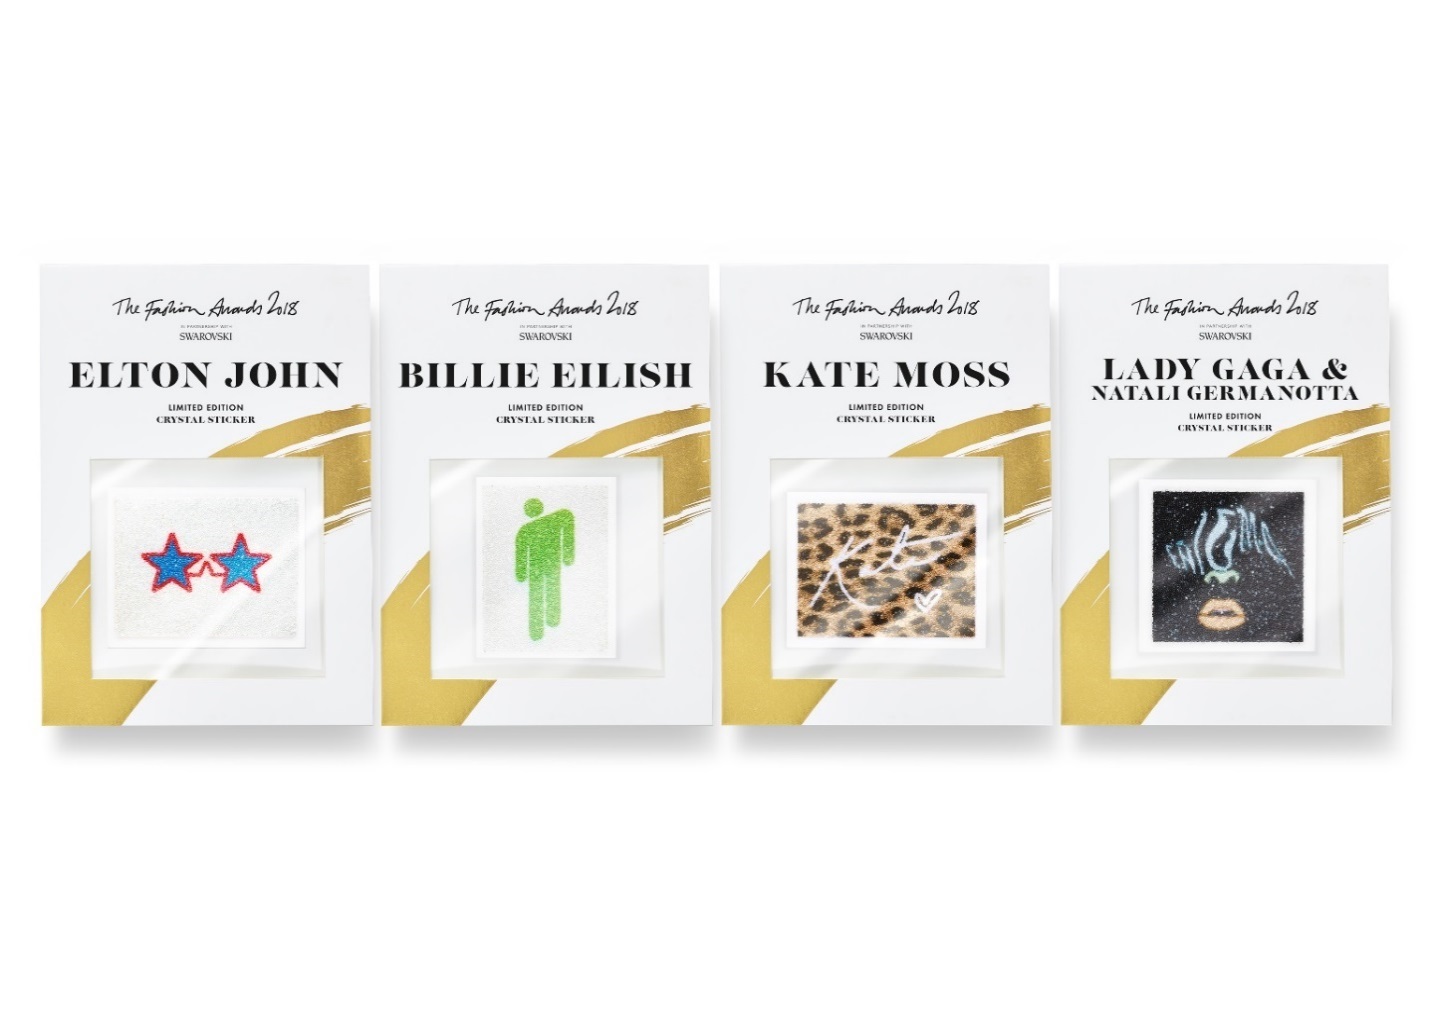 Η Swarovski λανσάρει την περιορισμένη έκδοση Crystal Stickers προς τιμή του fashion awards 2018